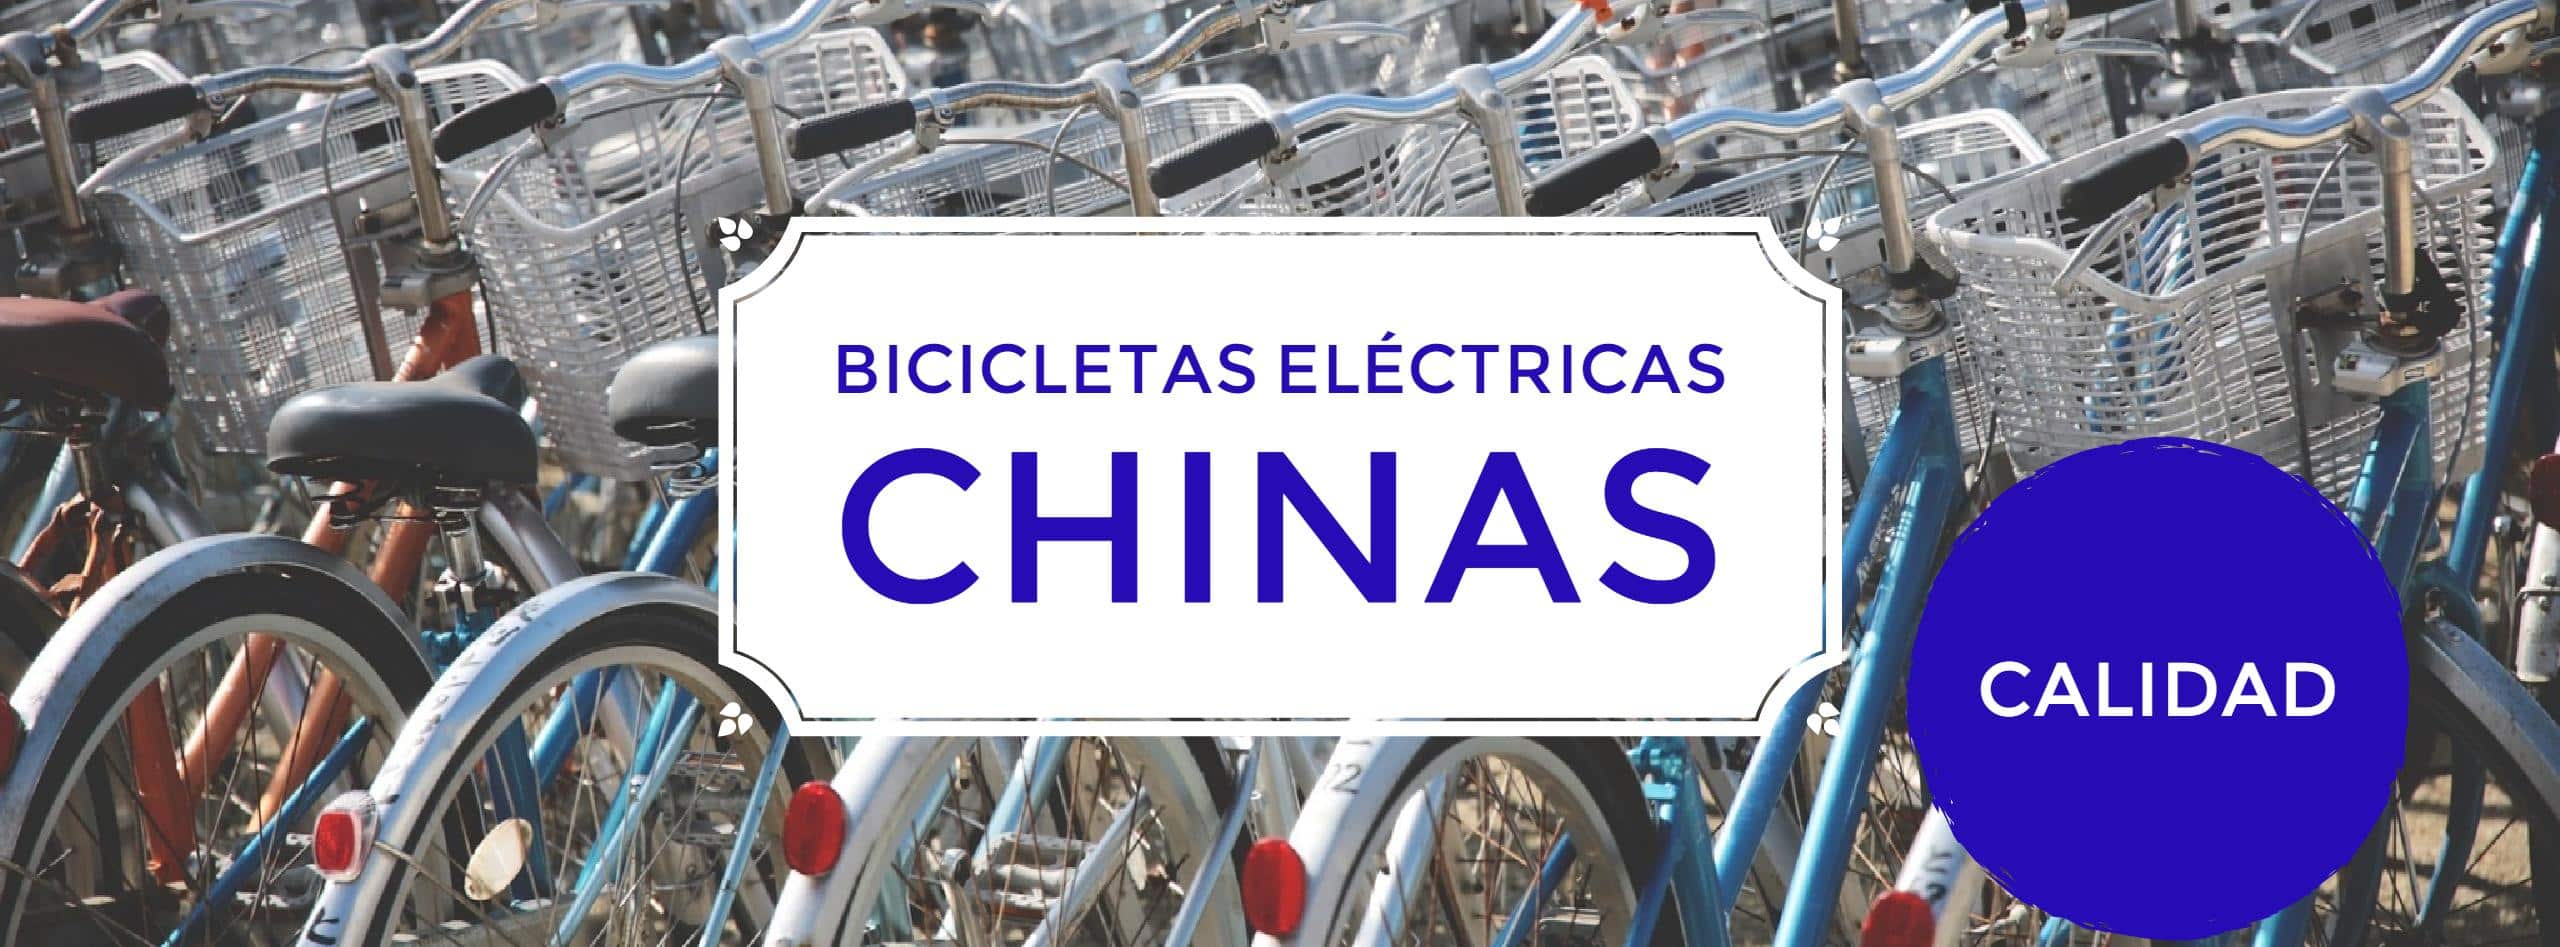 - Bicicletas eléctricas chinas